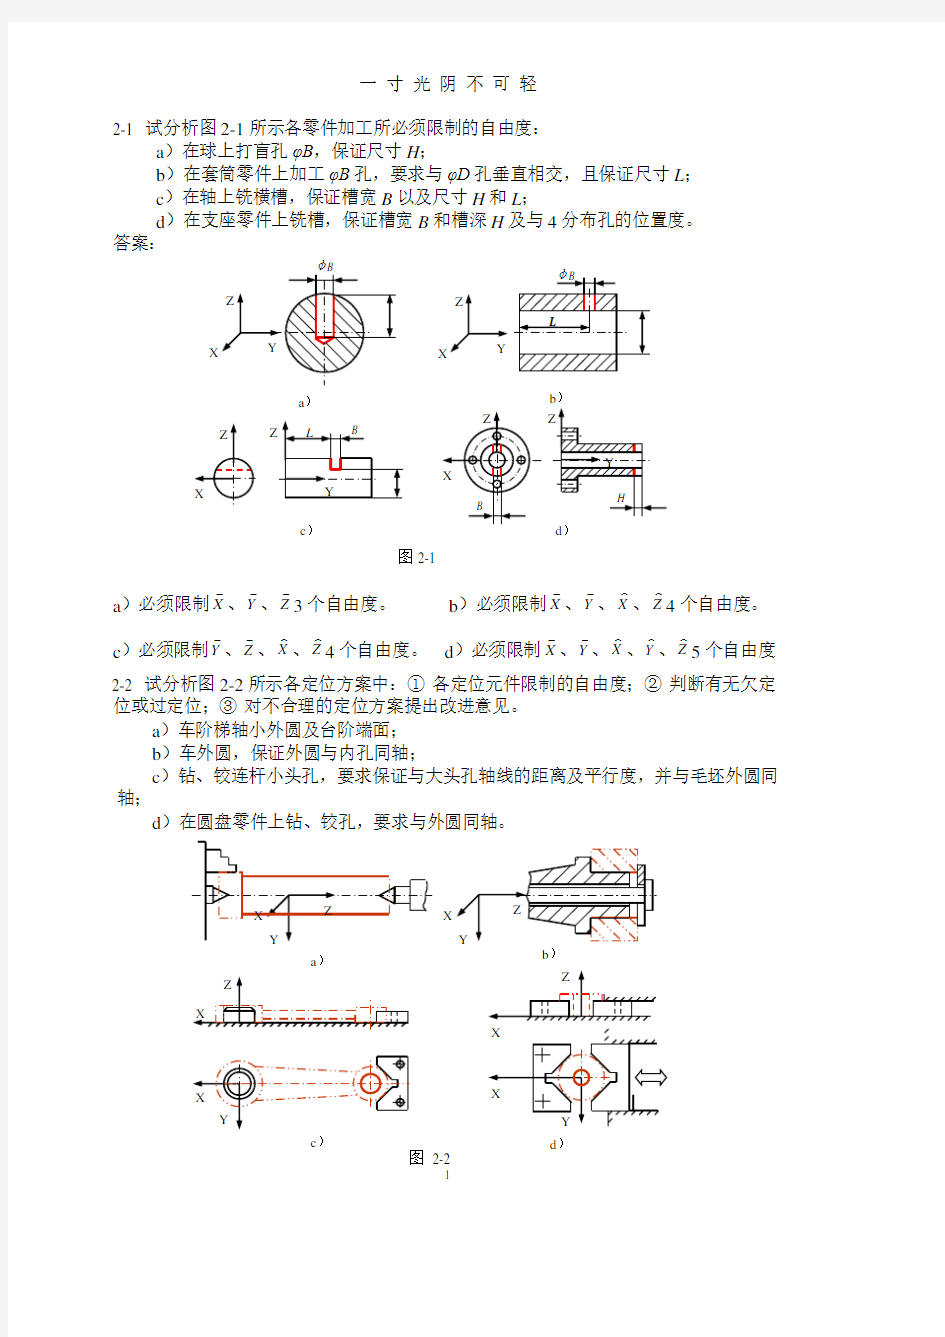 机械制造,作业,答案(ans).pdf